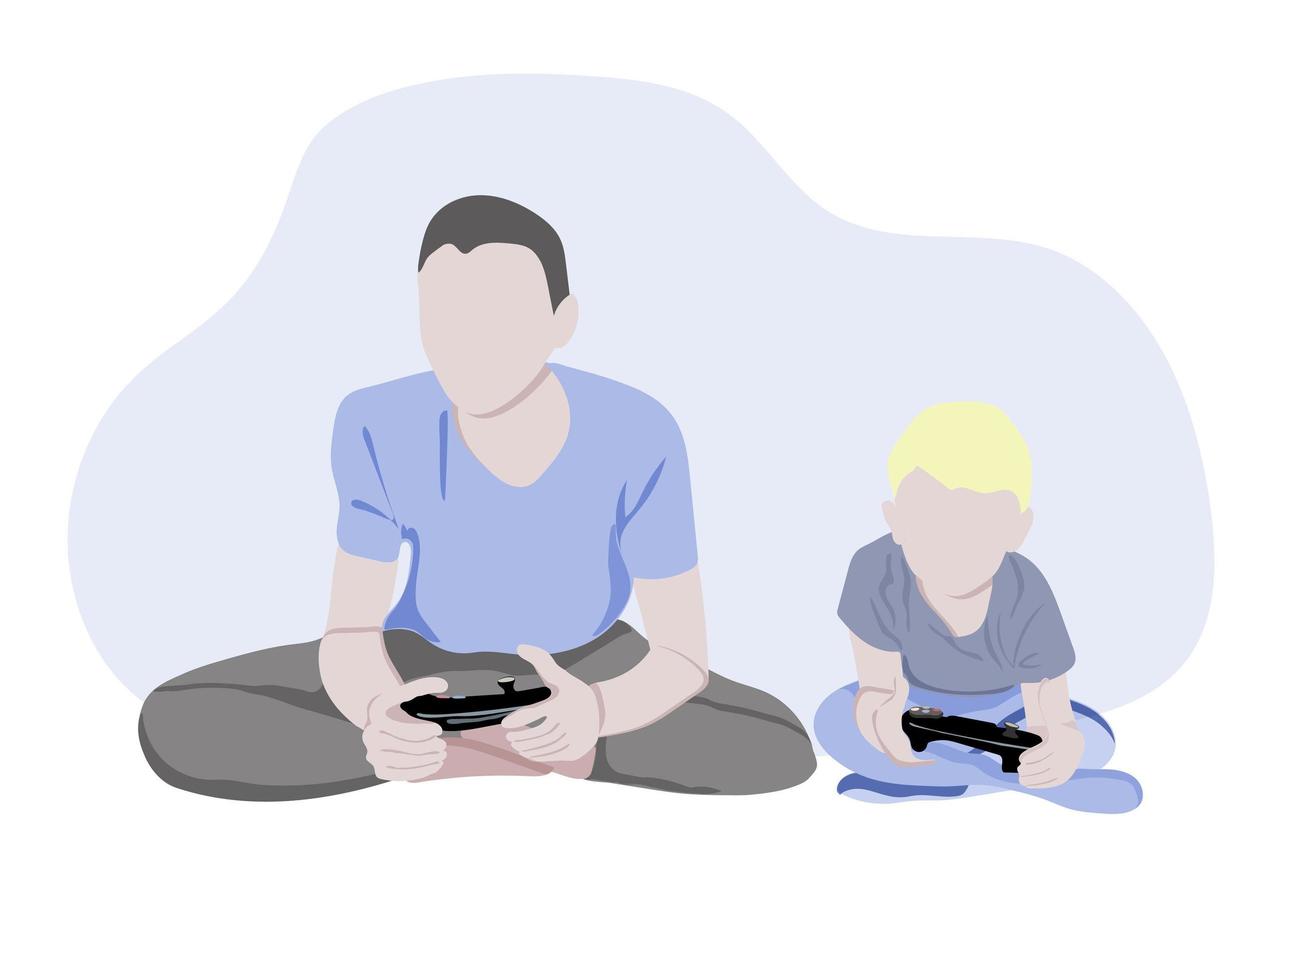 pai de família com filho jogando videogame - ilustrações de personagens de desenhos animados isoladas no fundo branco. um jovem pai e seu filho estão sentados, se divertindo e brincando juntos. vetor